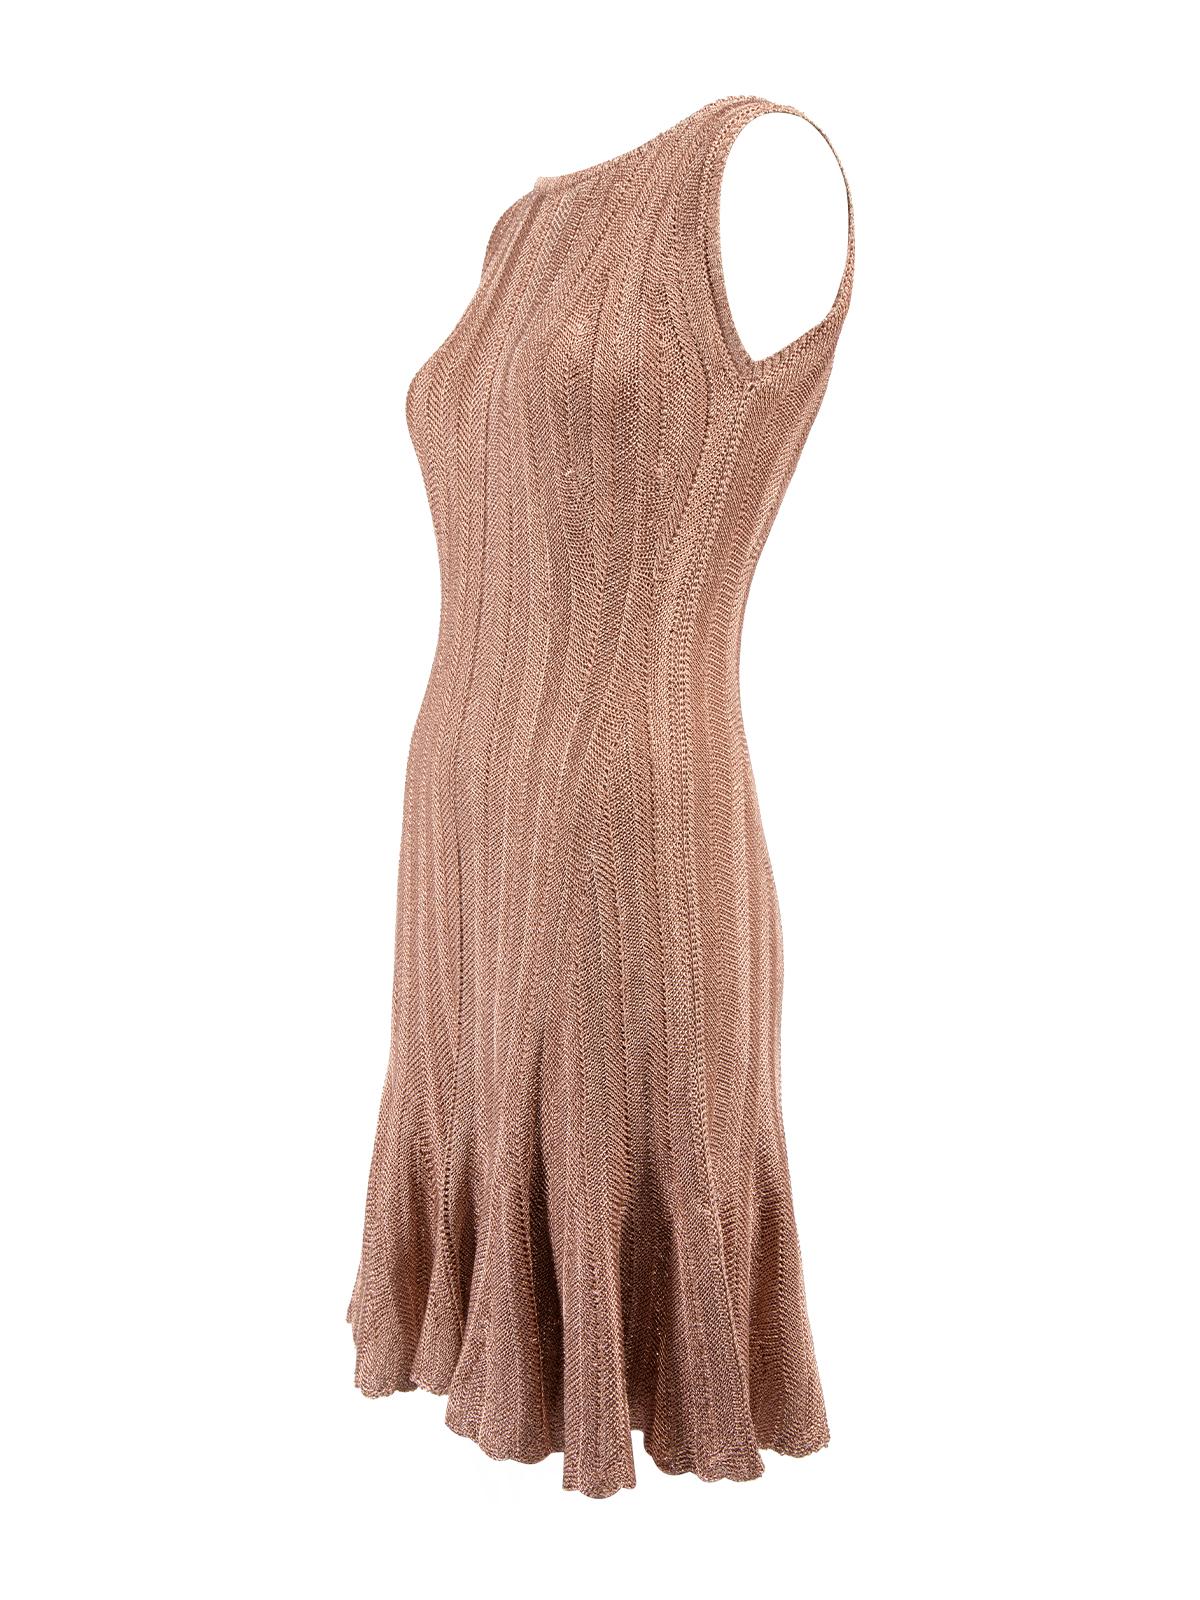 Pre-Loved Alexander McQueen Women's Sleeveless Metallic Dress 1